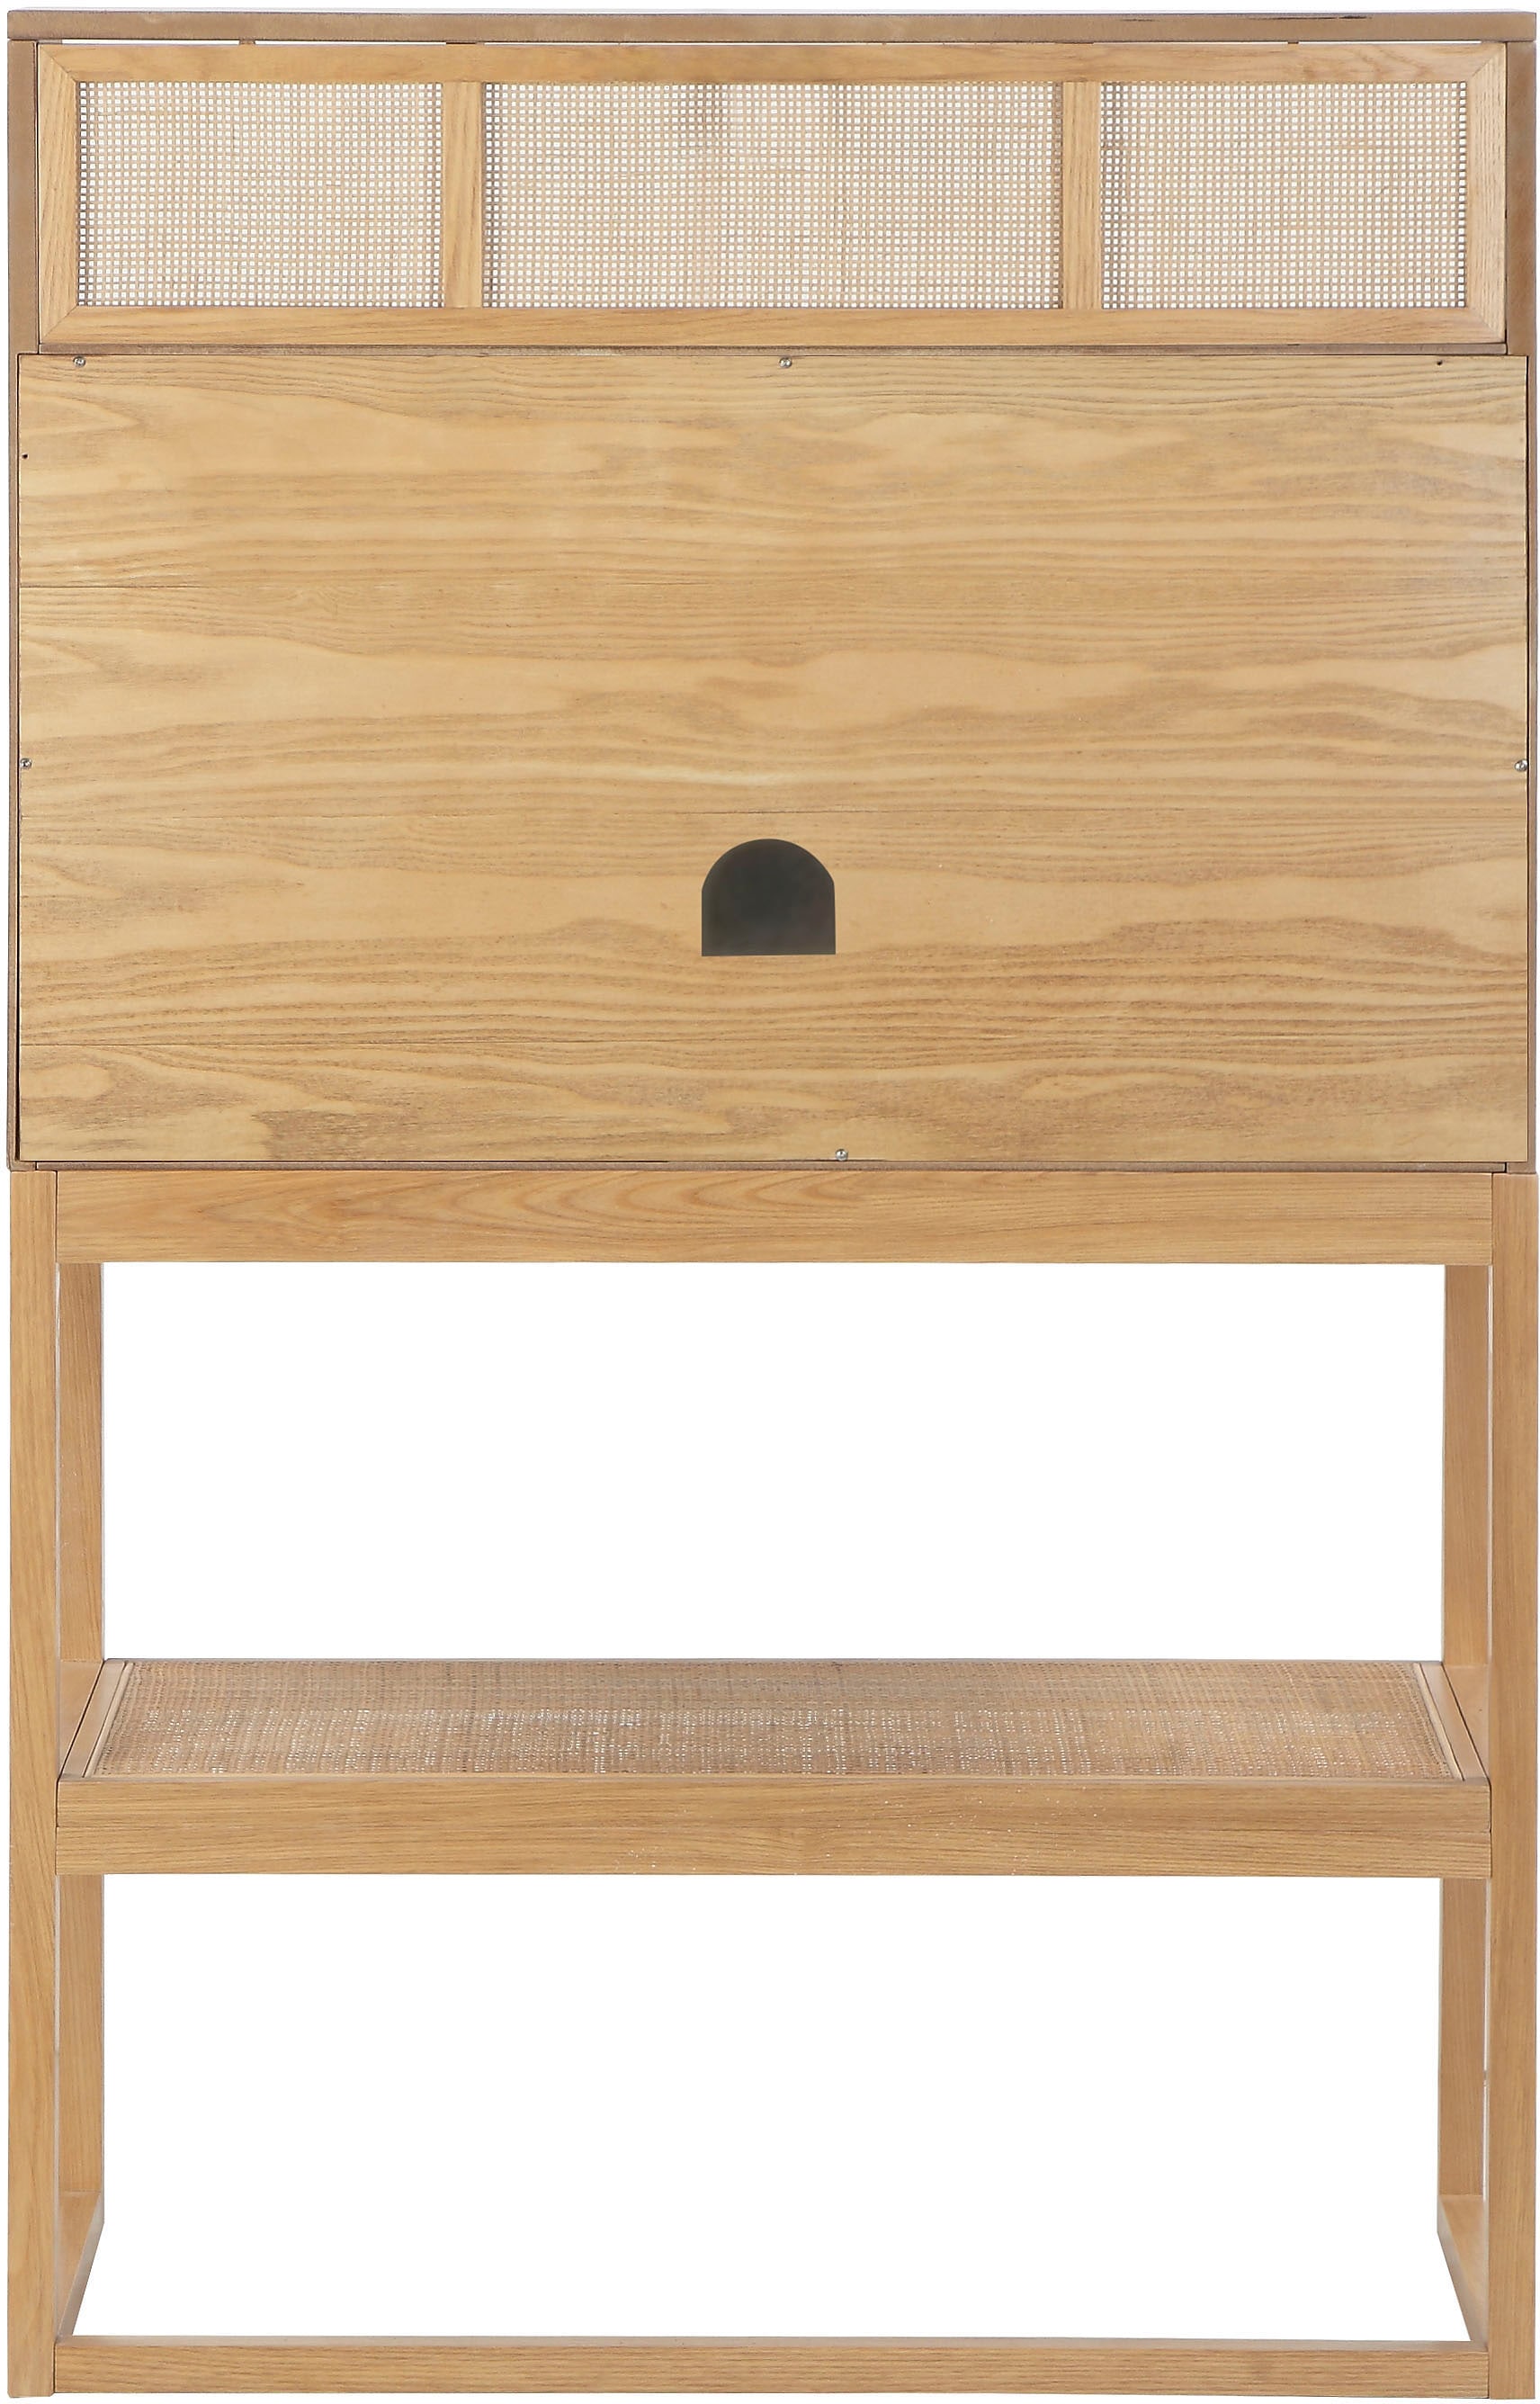 andas Schreibtisch »Gatwick«, ausklappbaren Schreibtischplatten, Design by Morten Georgsen